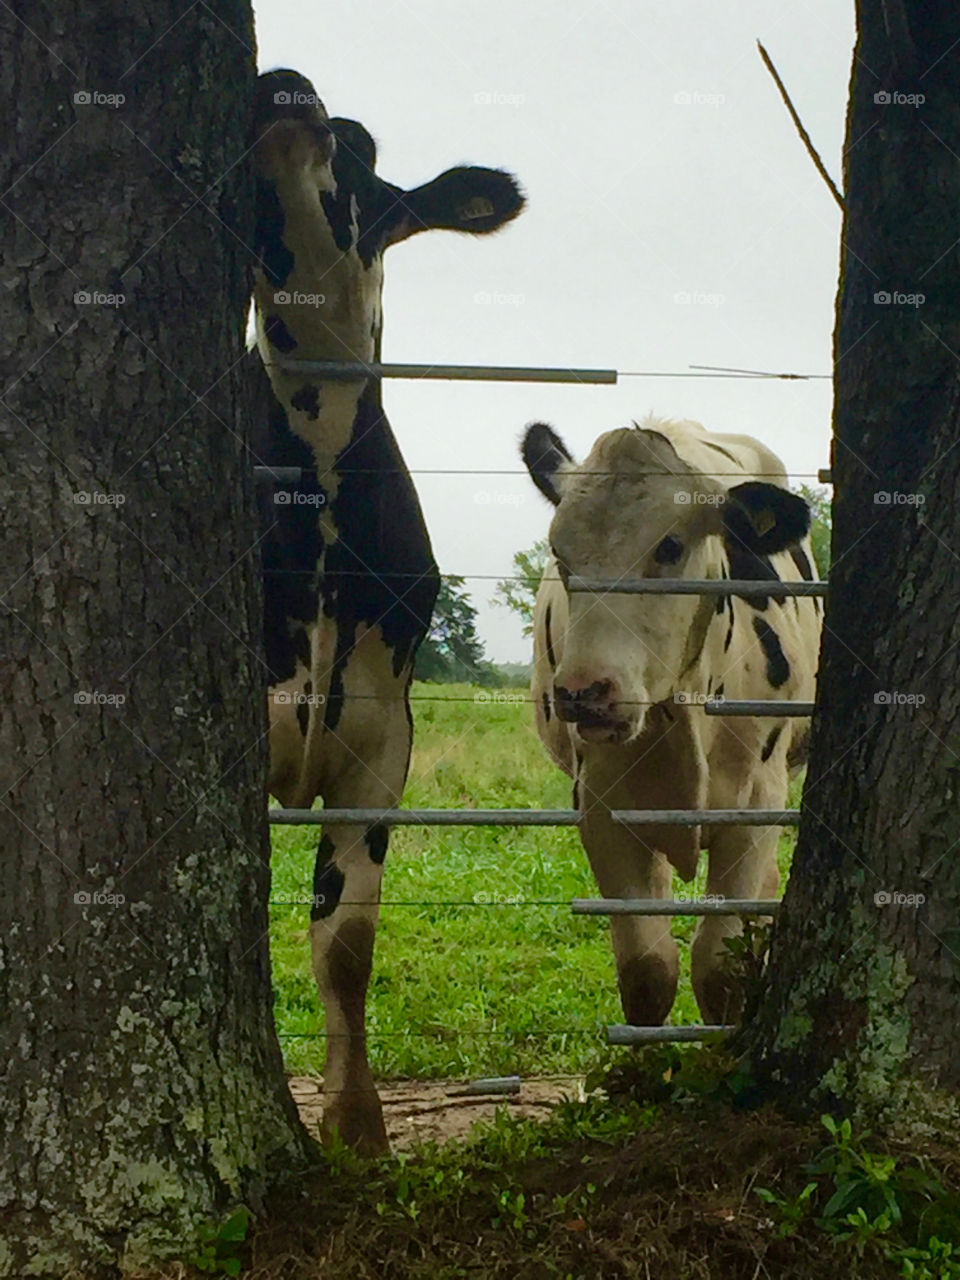 Cows
